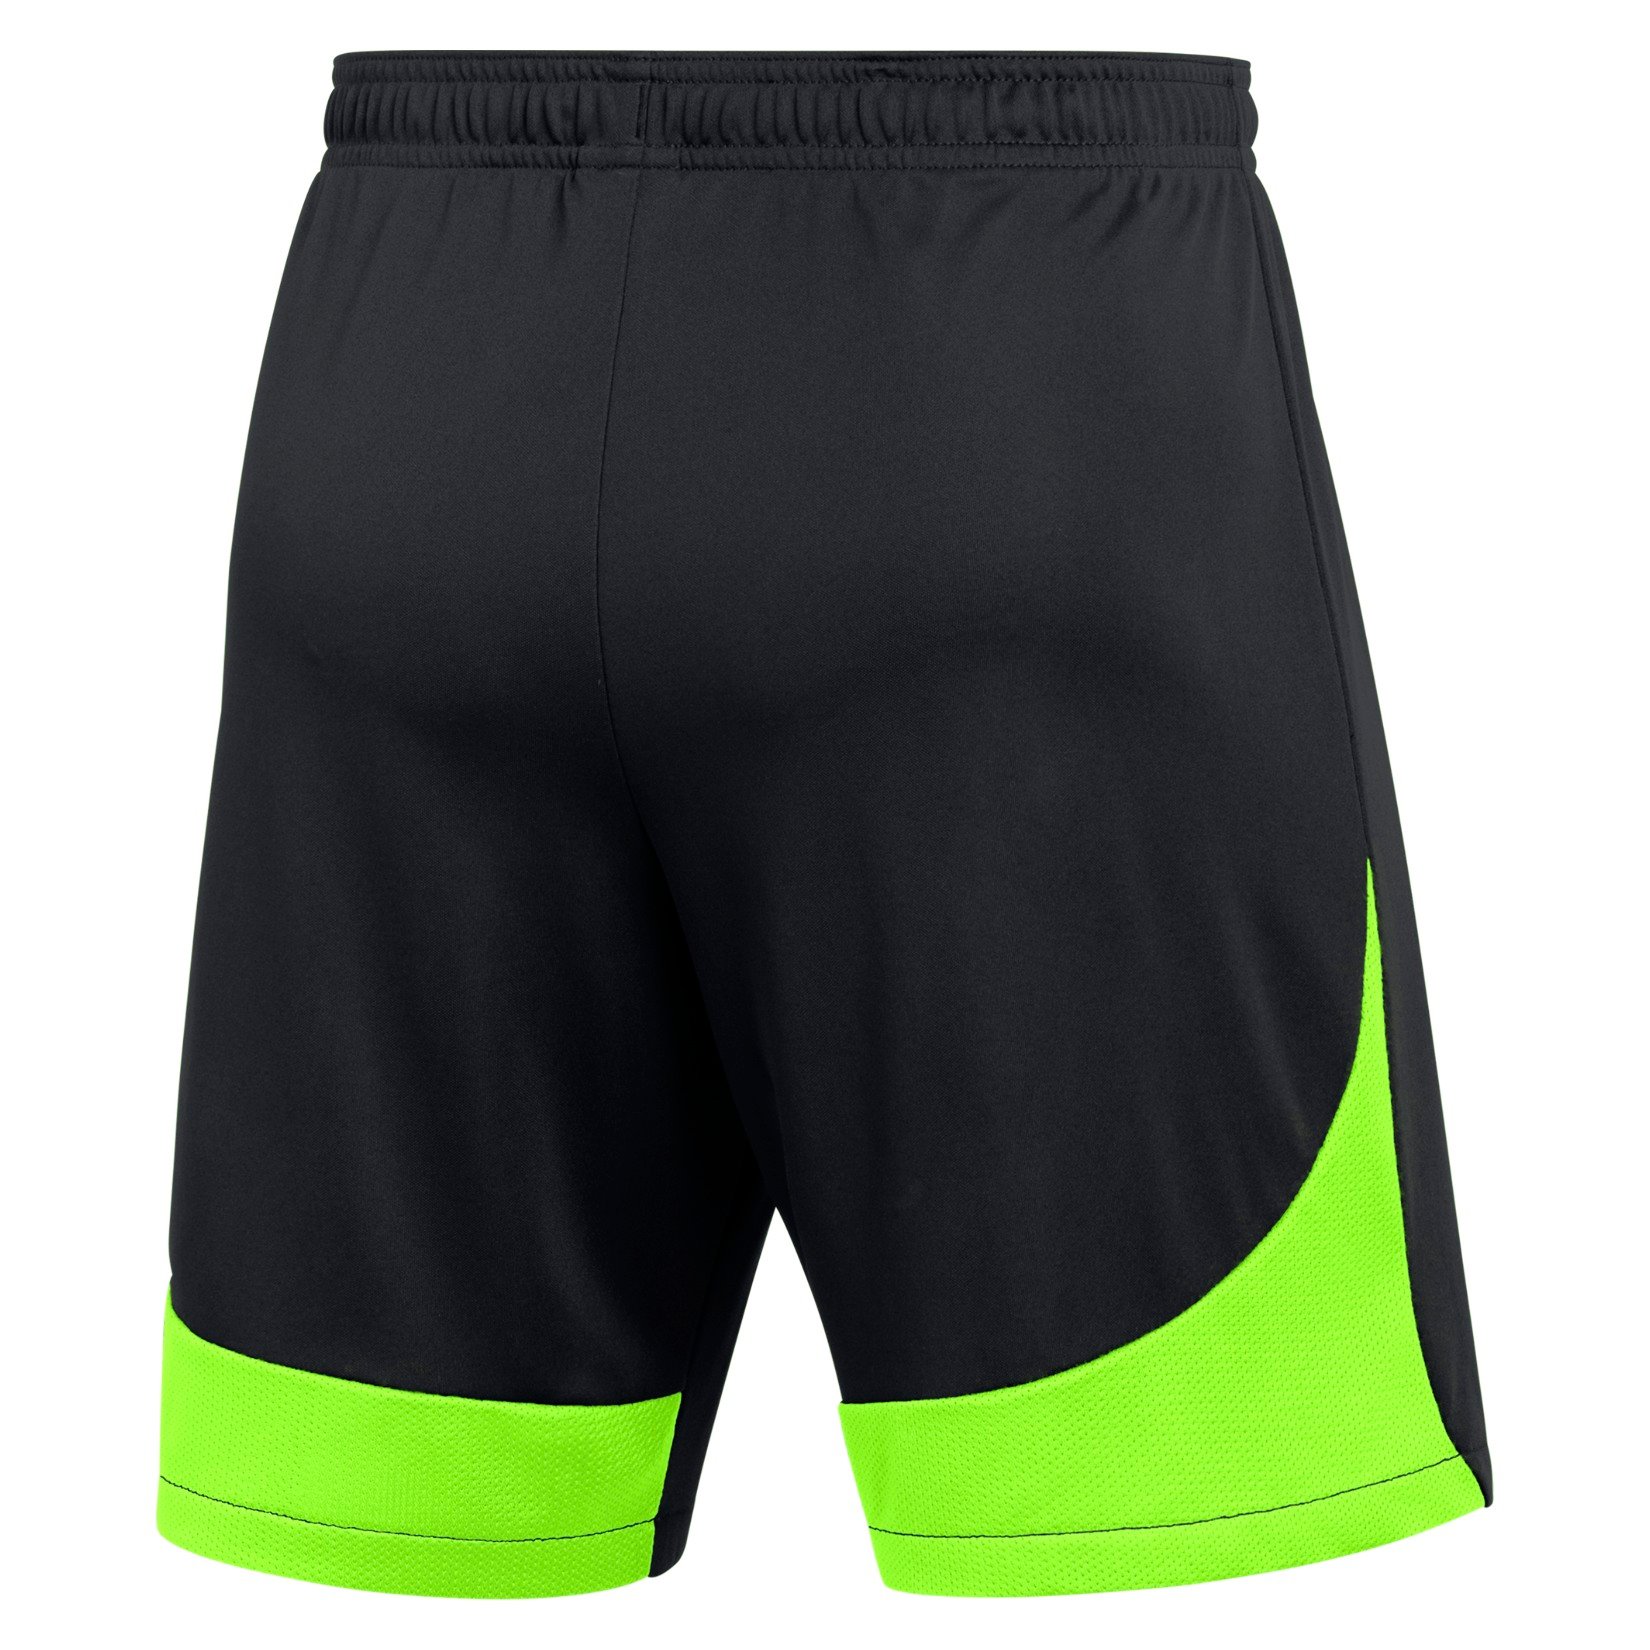 Nike Dri-FIT Academy Pro Shorts